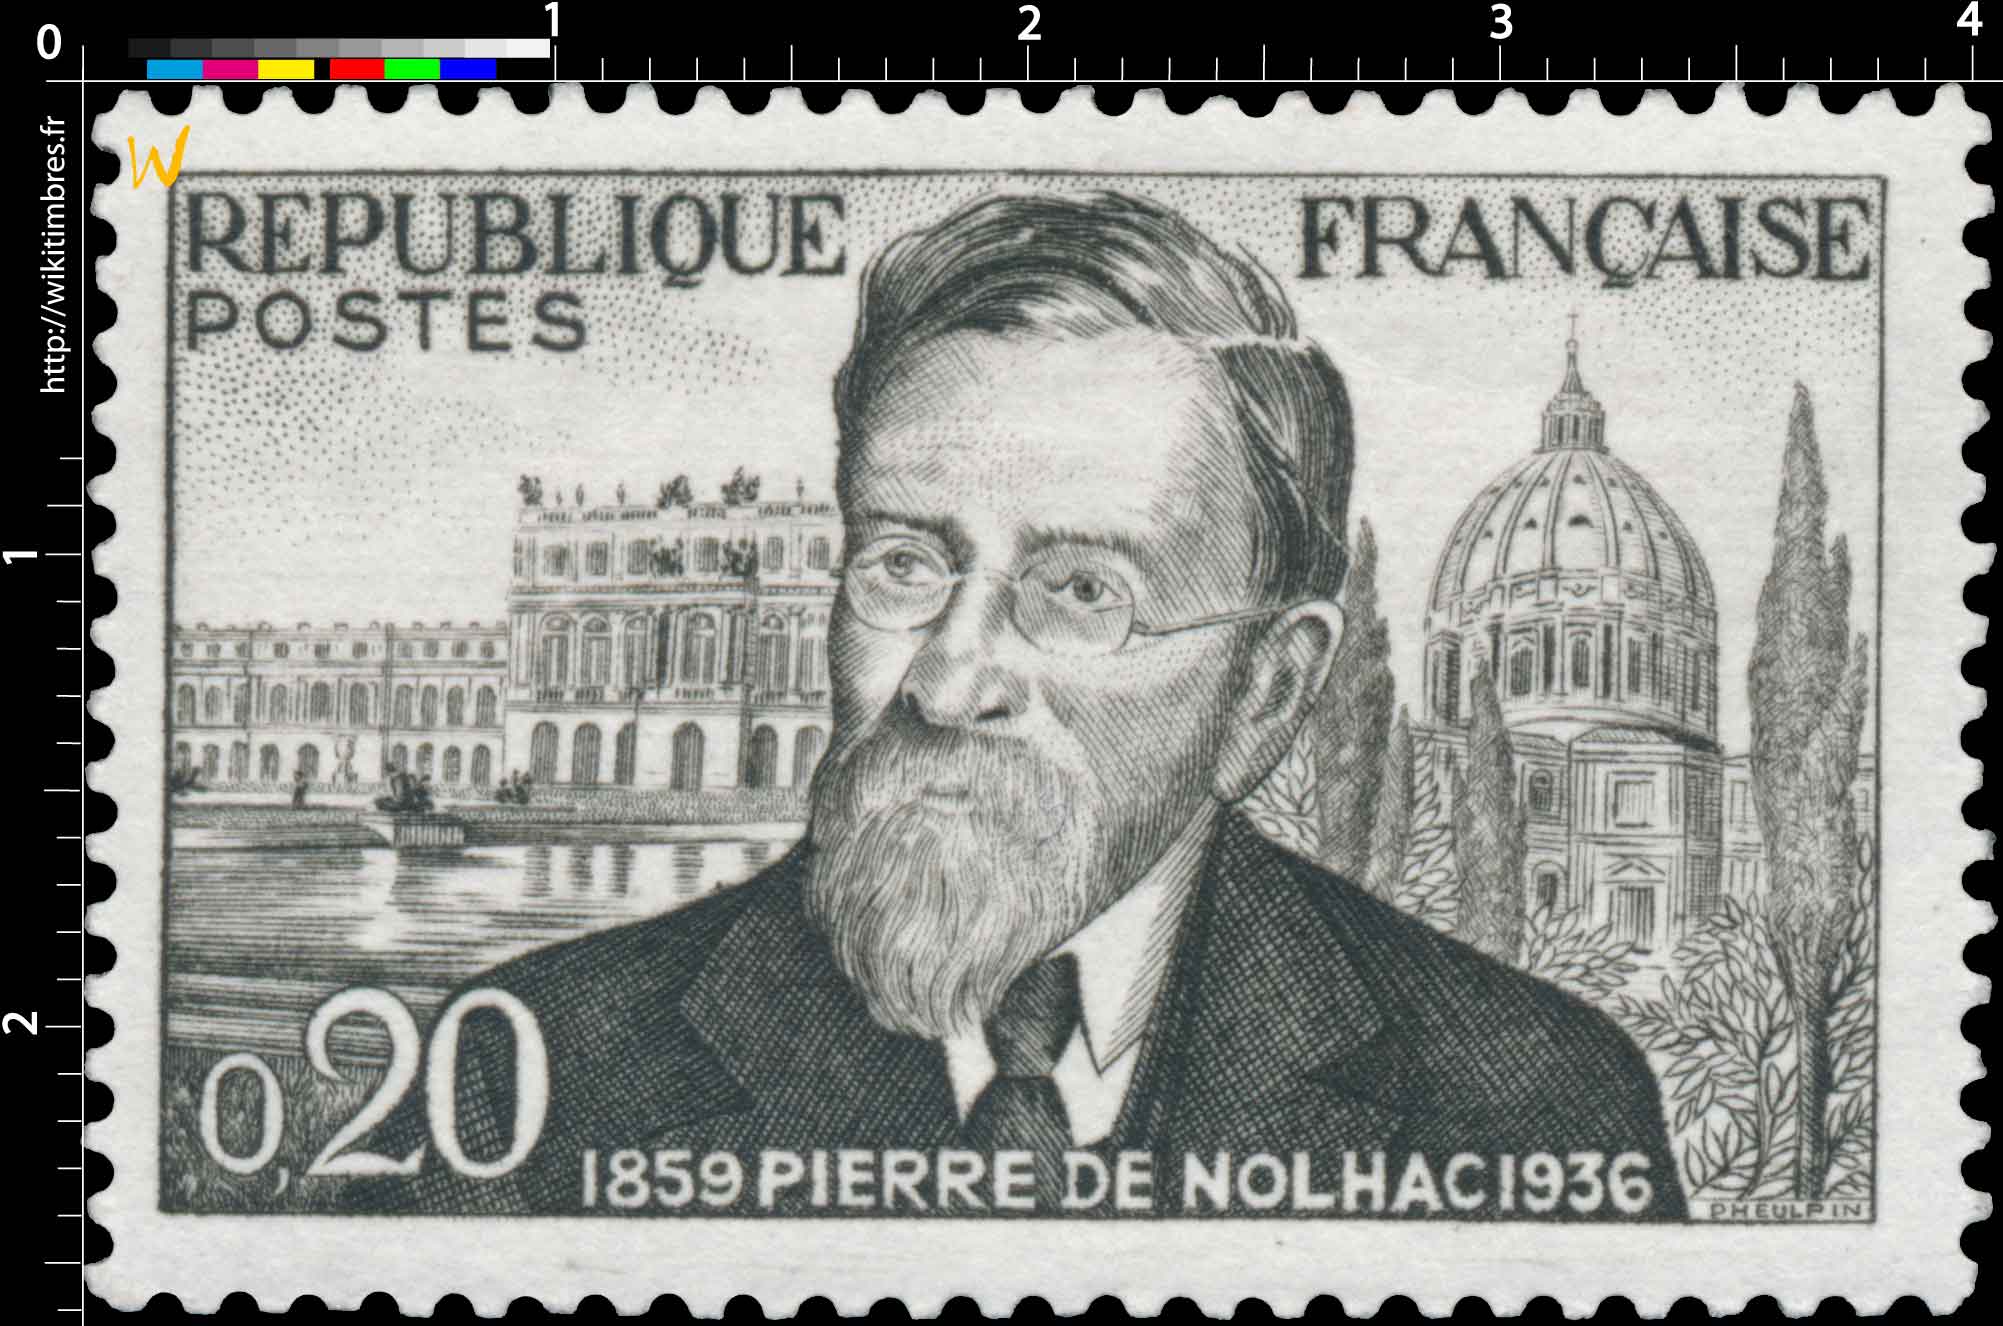 PIERRE DE NOLHAC 1859 1936